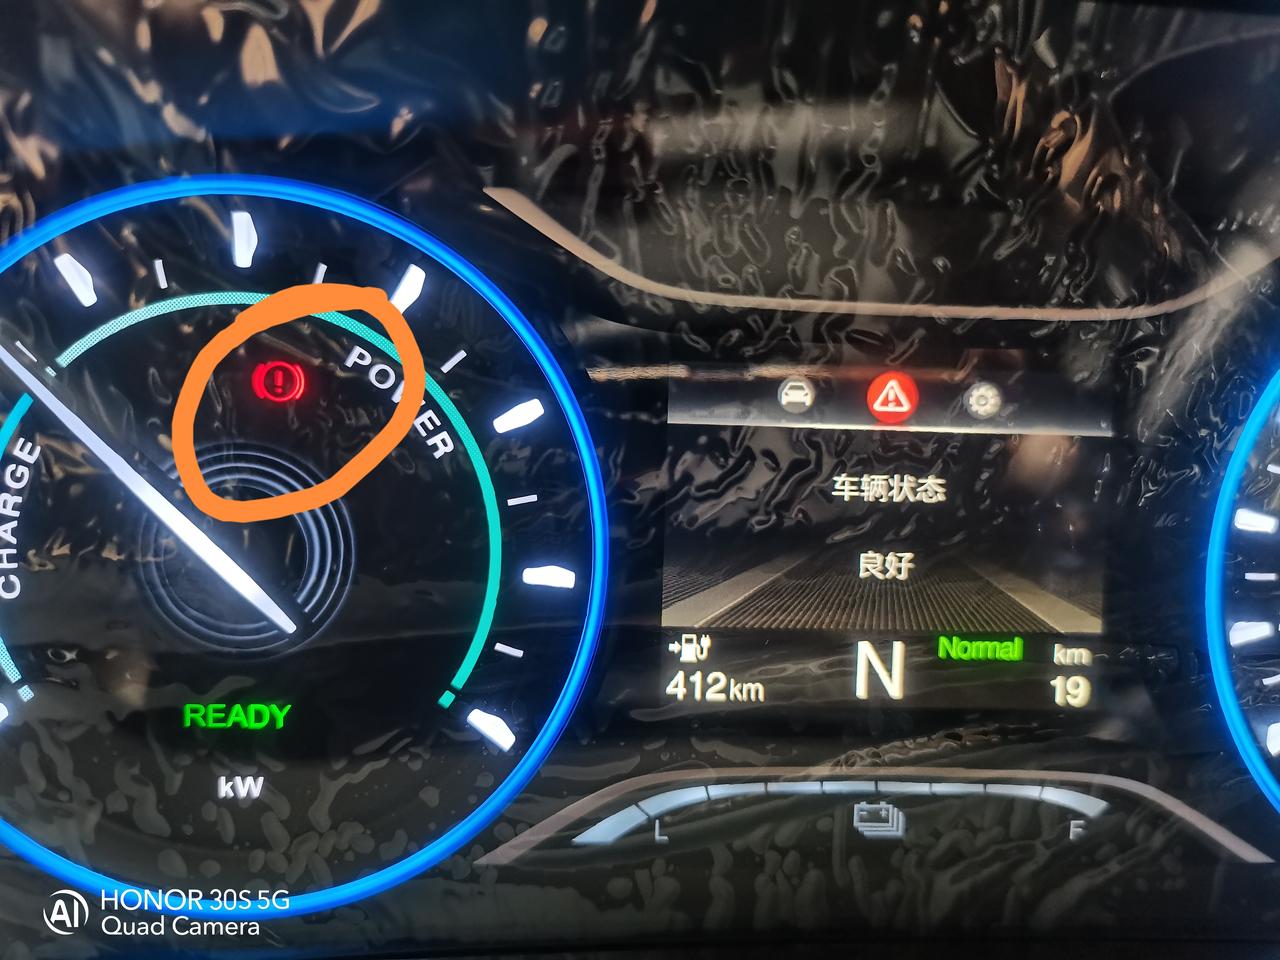 埃安AION S 终于提车了，22款魅580pio，启动车辆就会显示下图那个红色叹号。醉了。这情况是正常的吗？按说明书